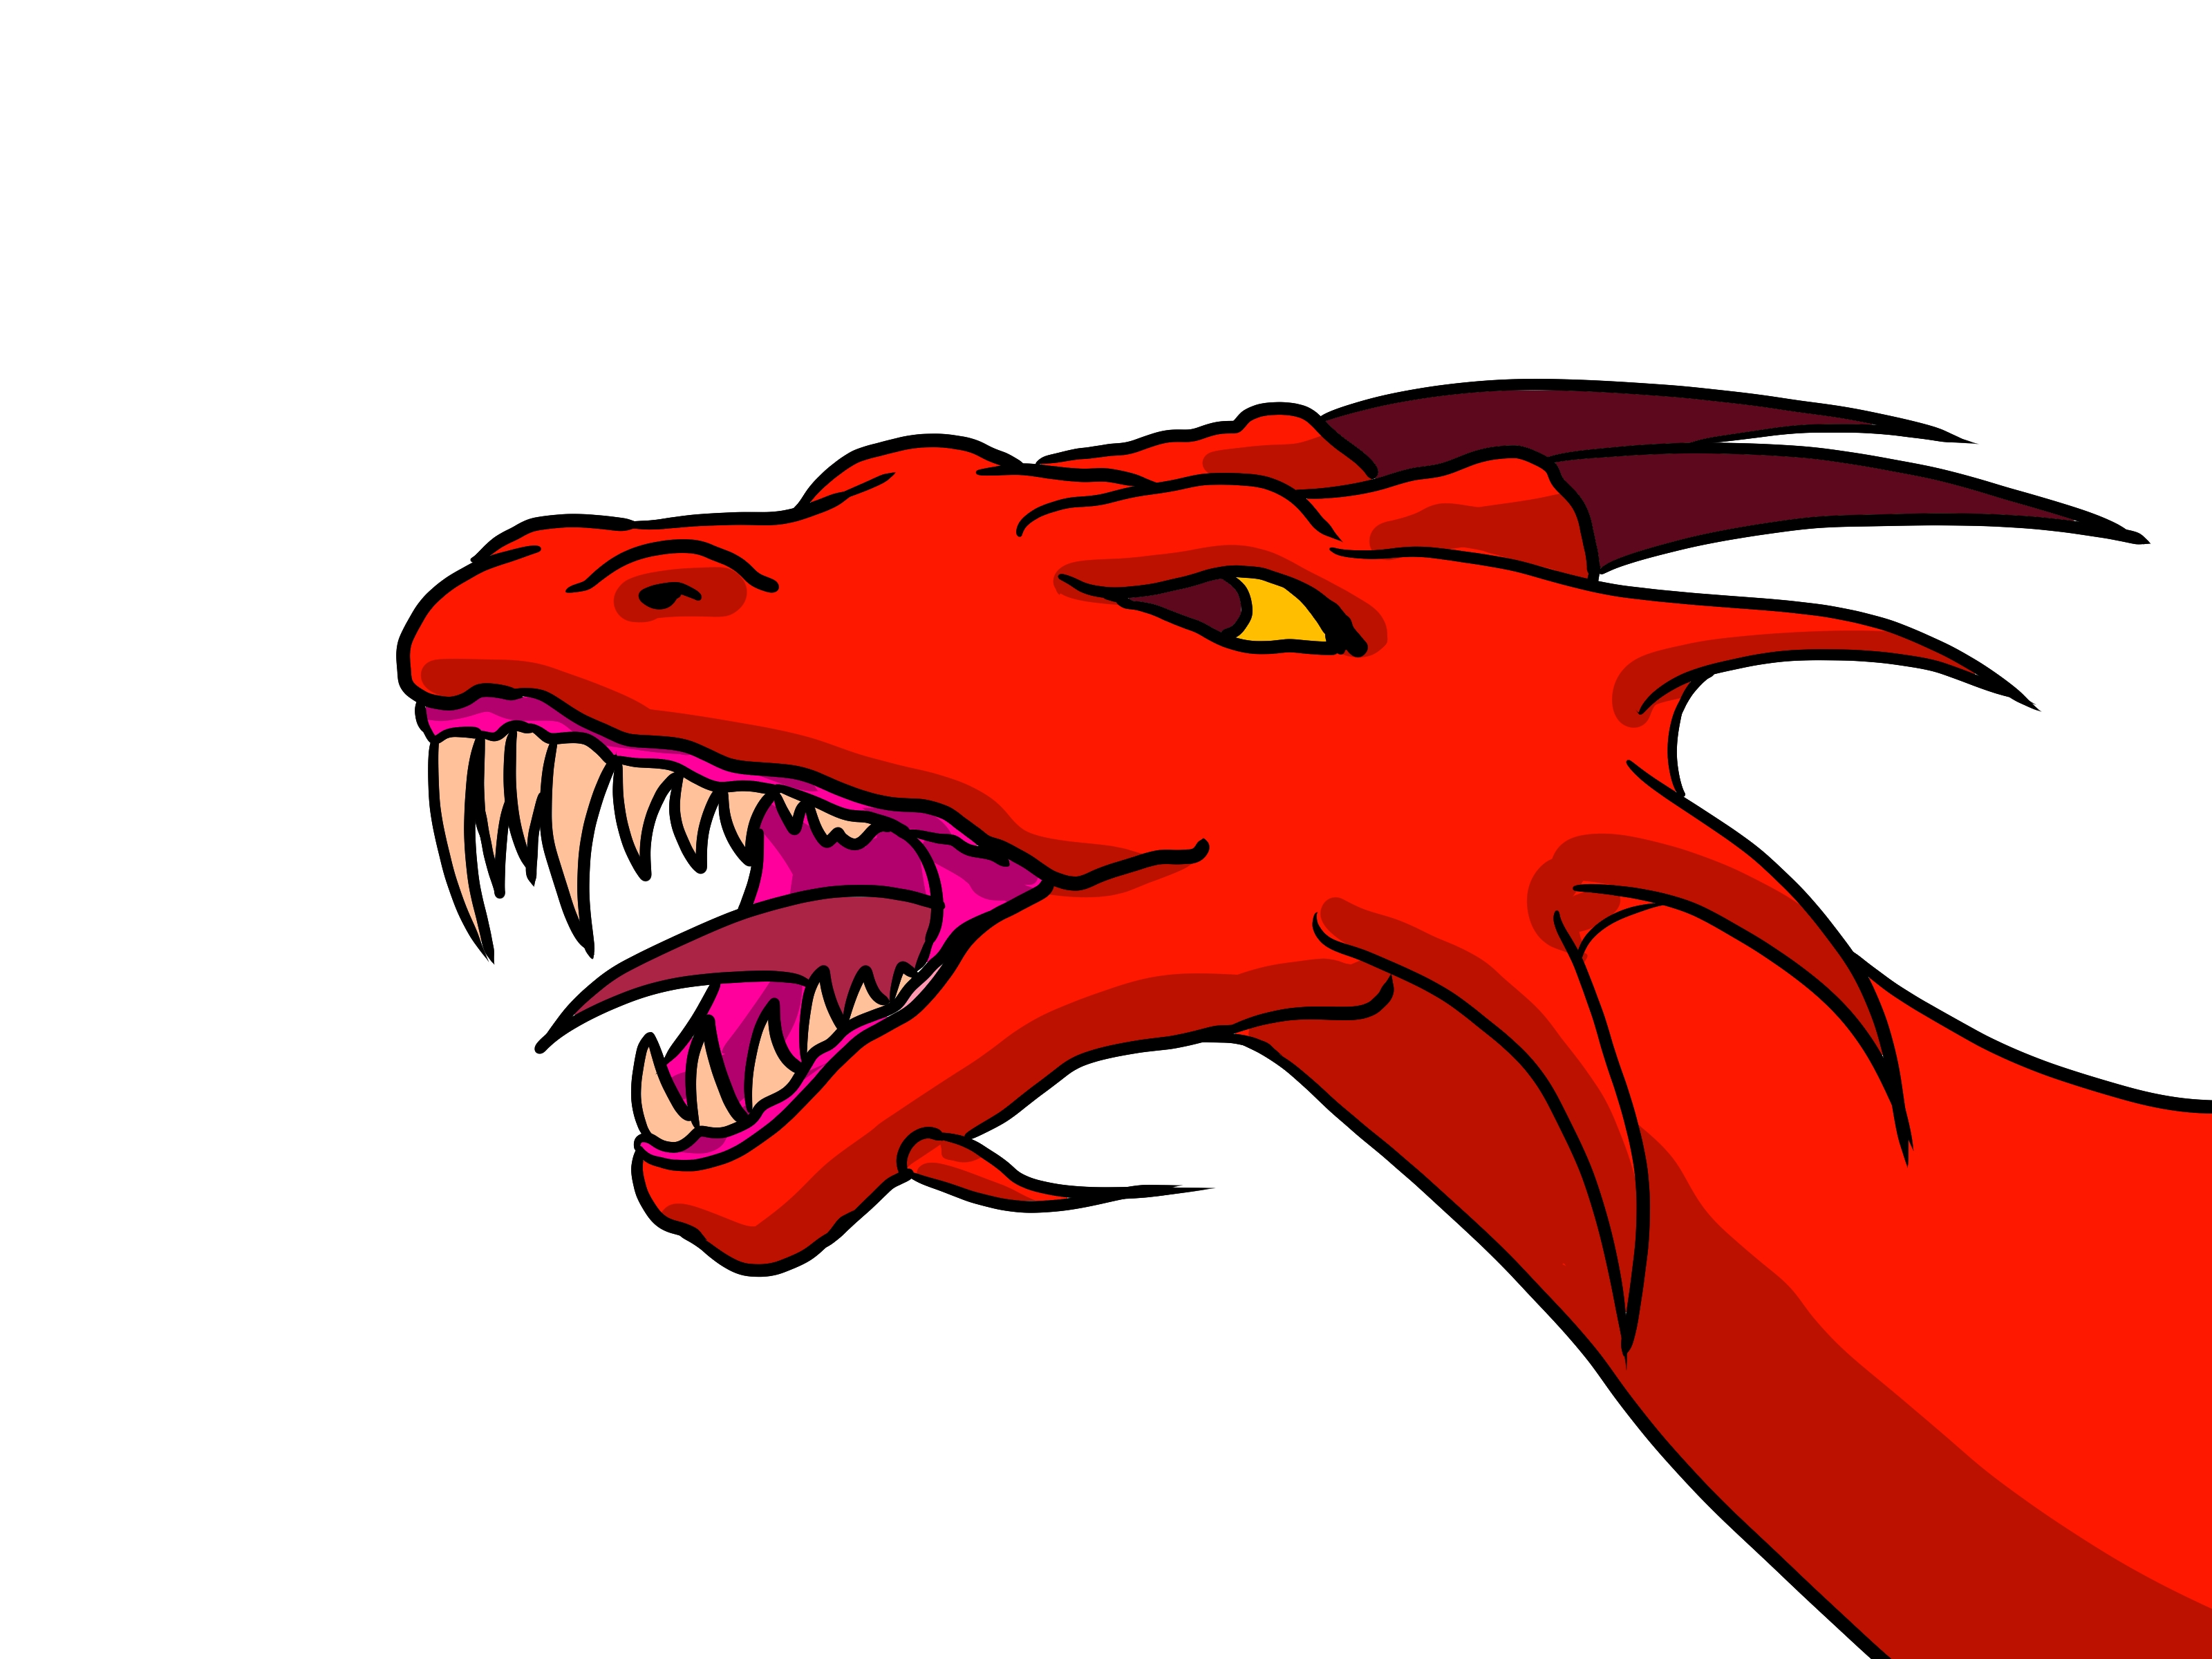 4 Ways to Draw a Dragon - wikiHow